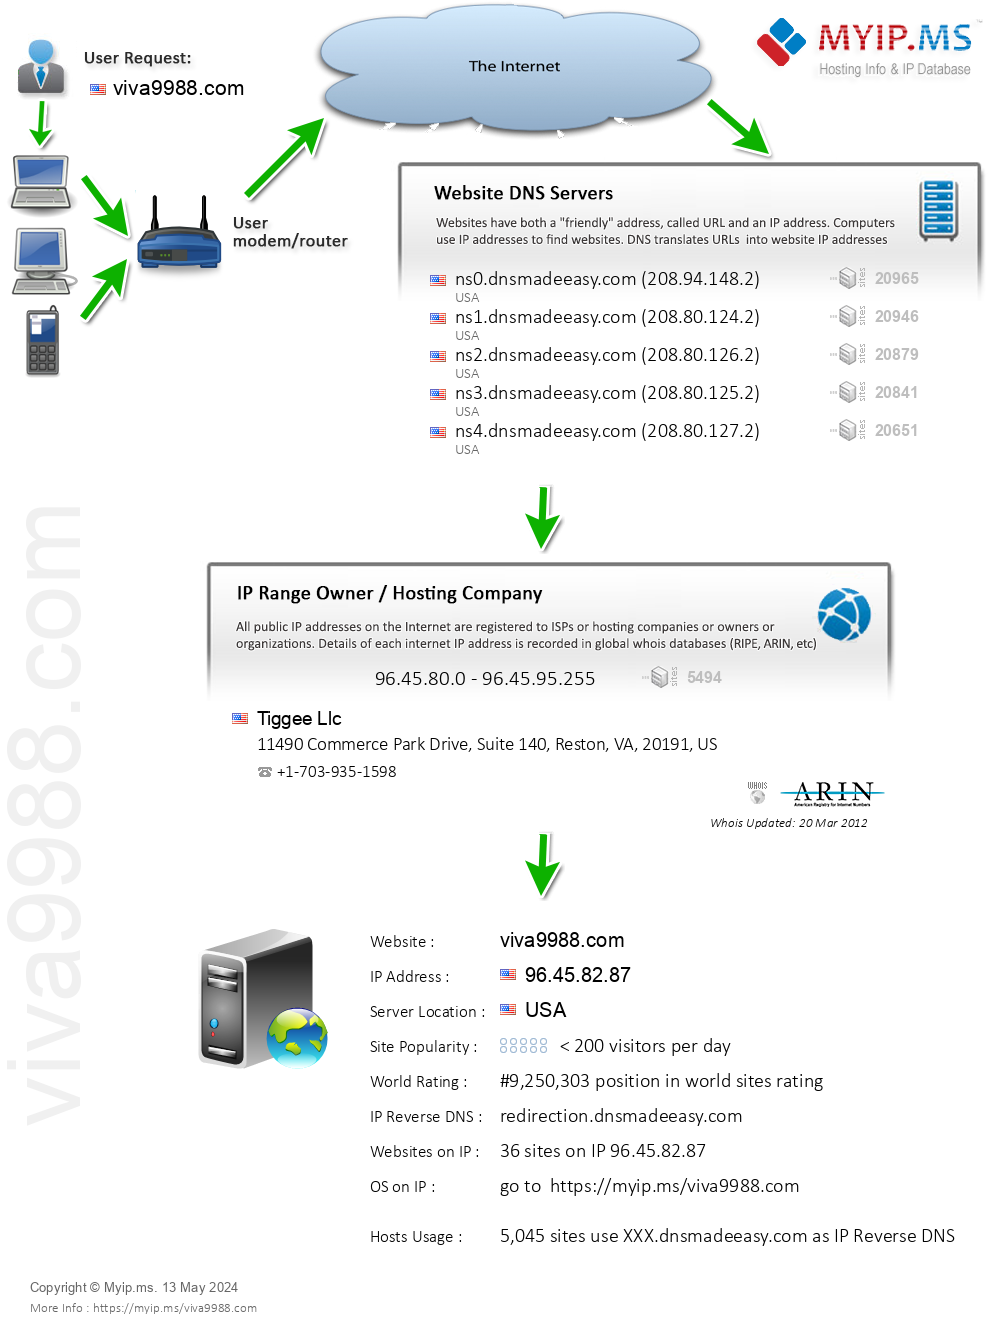 Viva9988.com - Website Hosting Visual IP Diagram